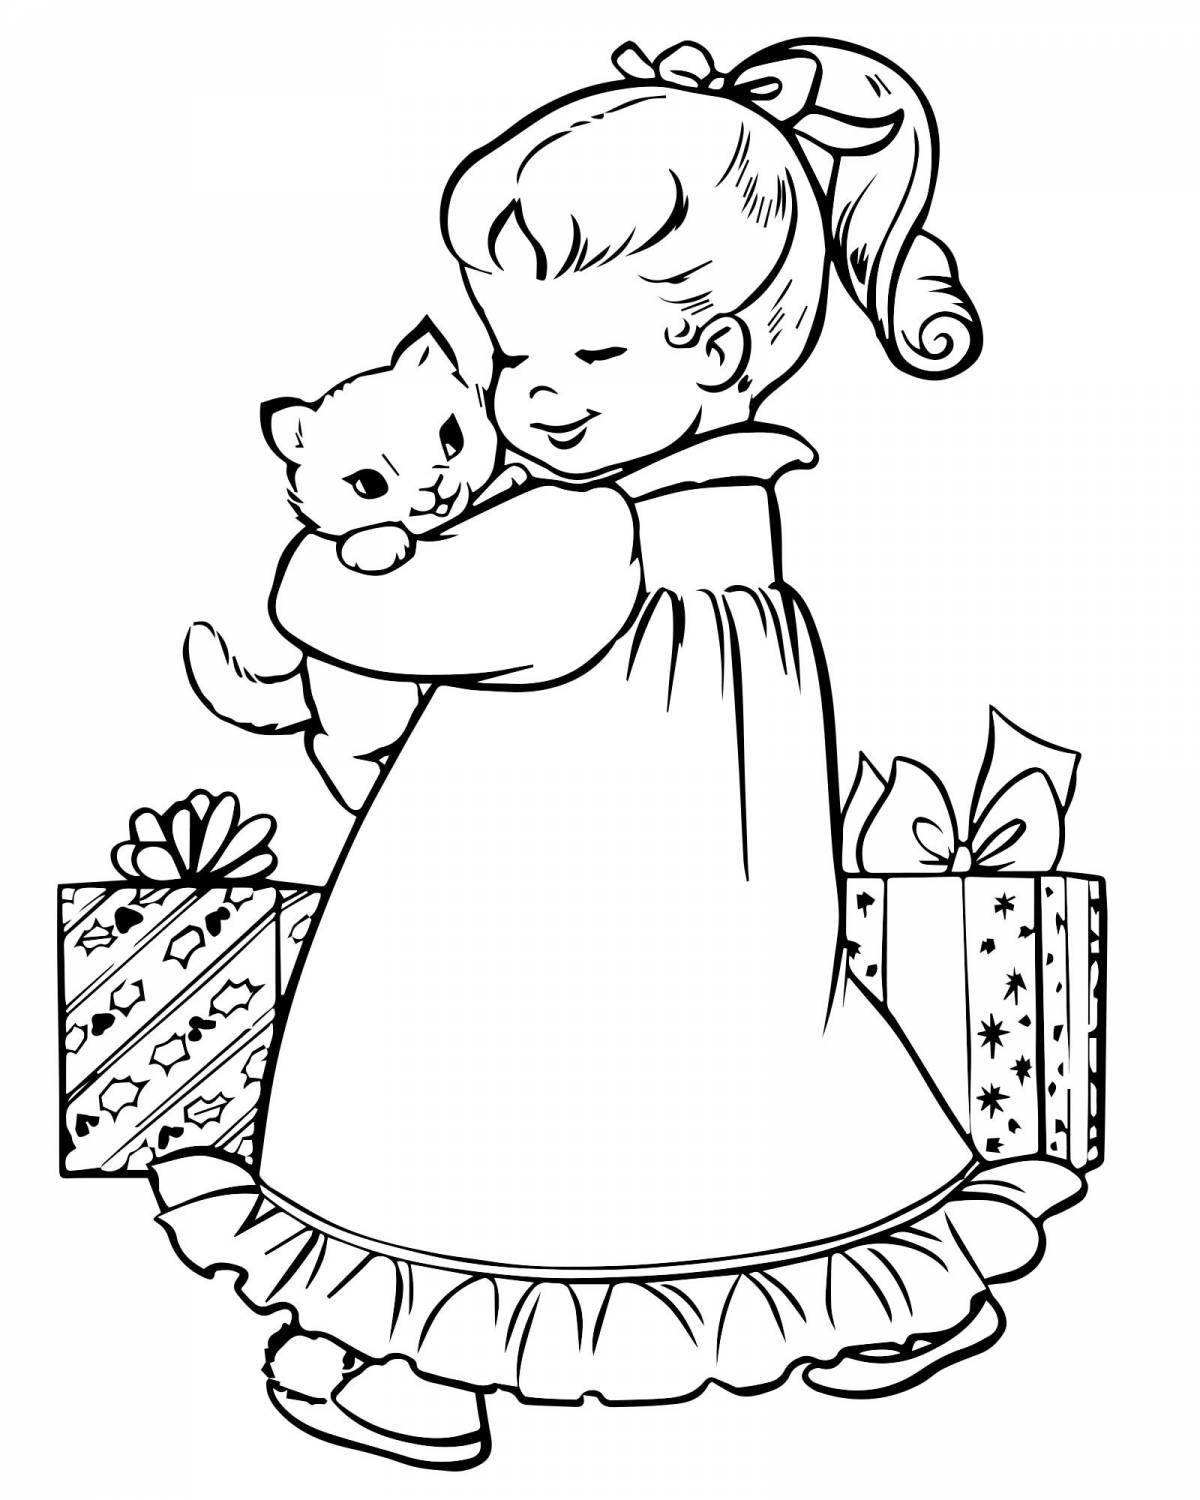 Великолепная раскраска девочка с кошкой